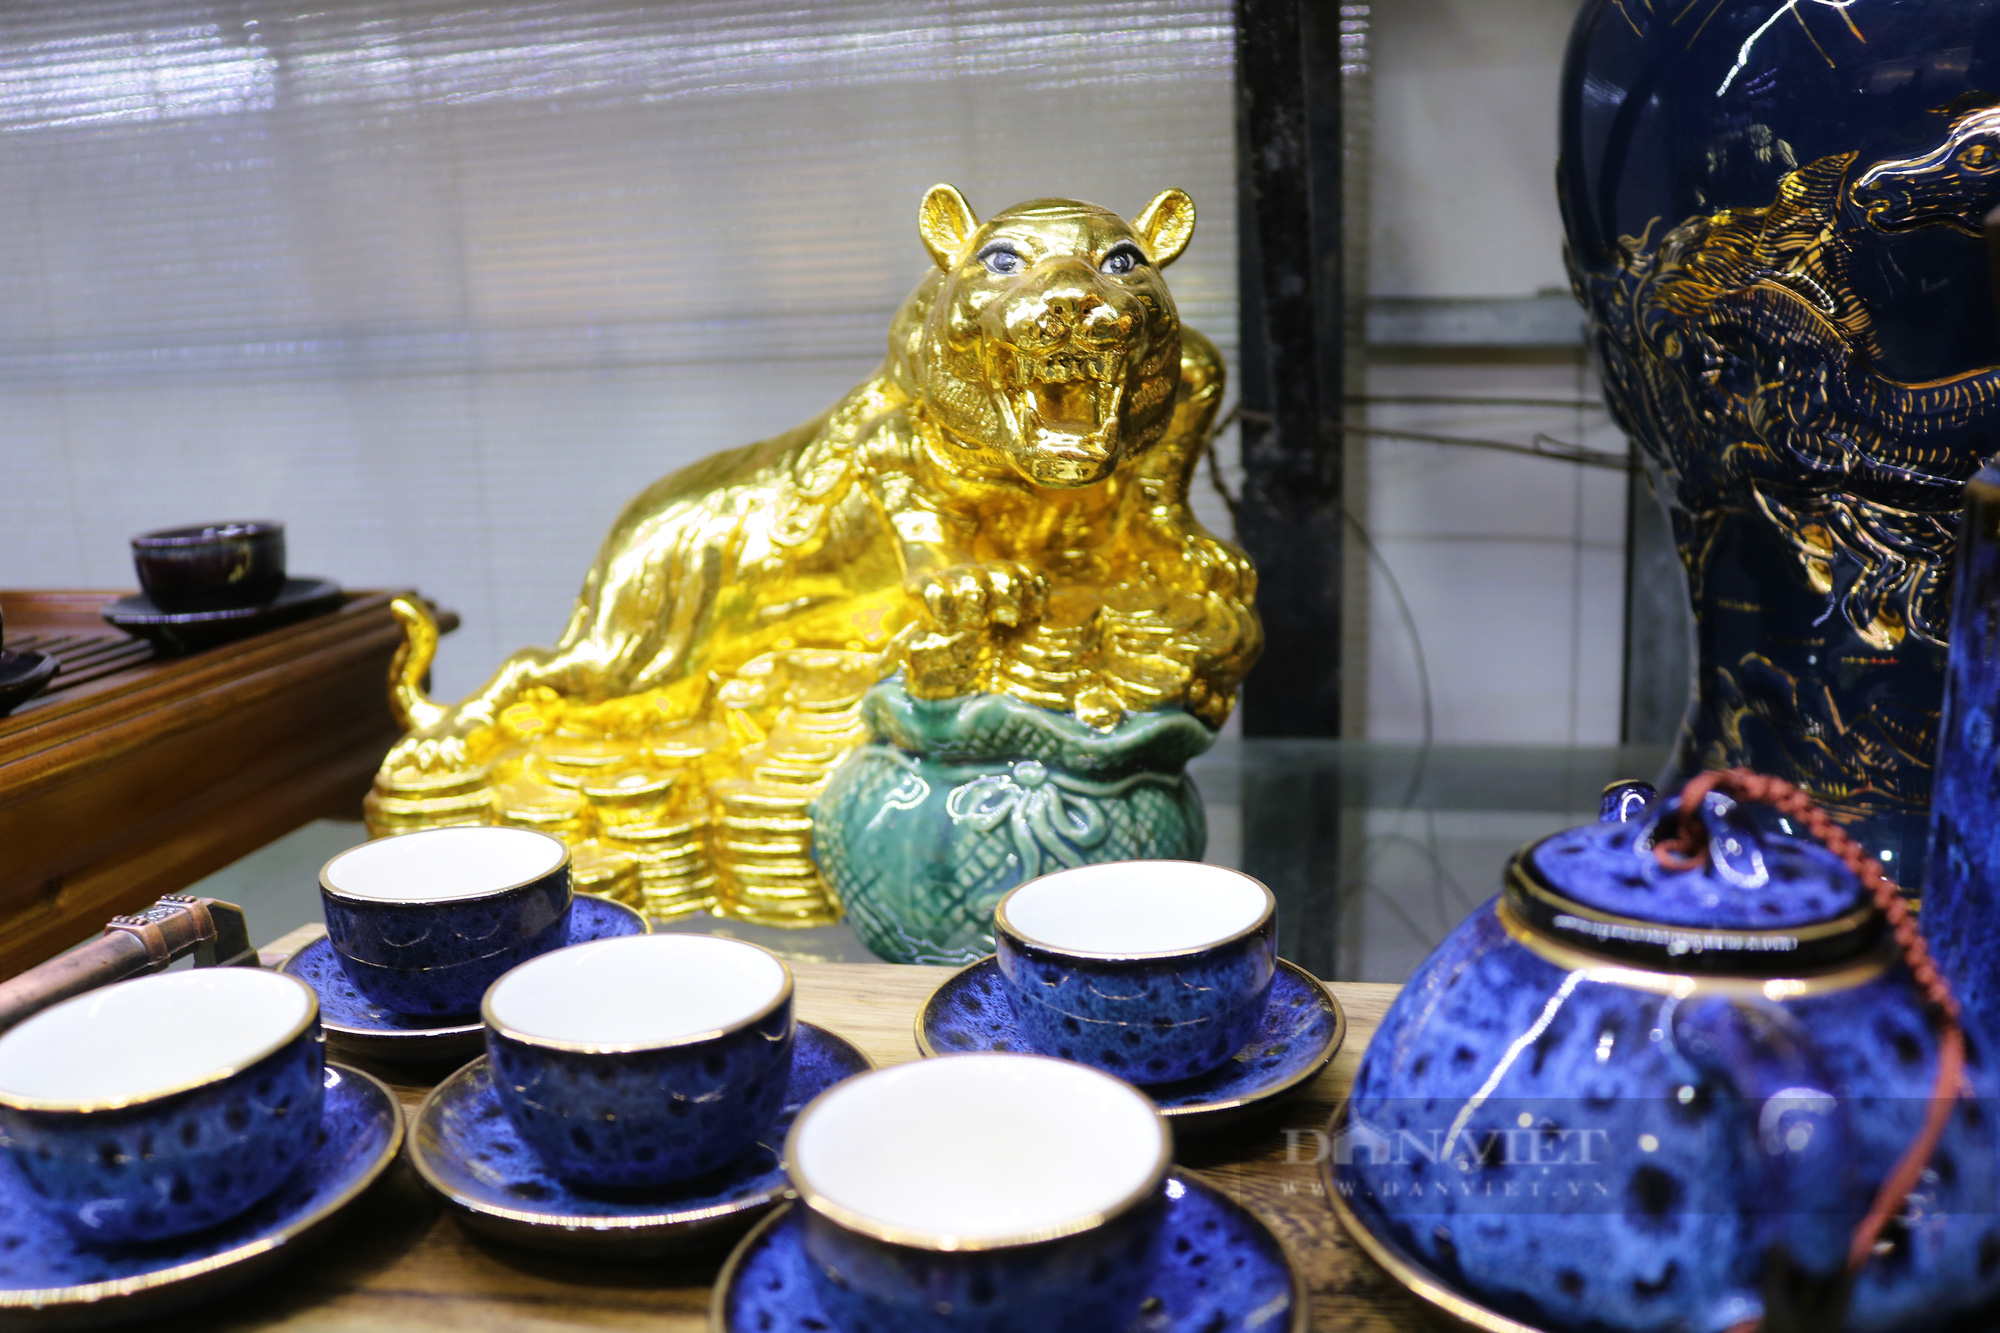 Đồ gốm sứ có linh vật hổ được bày bán khá ít tại chợ gốm Bát Tràng năm nay. 